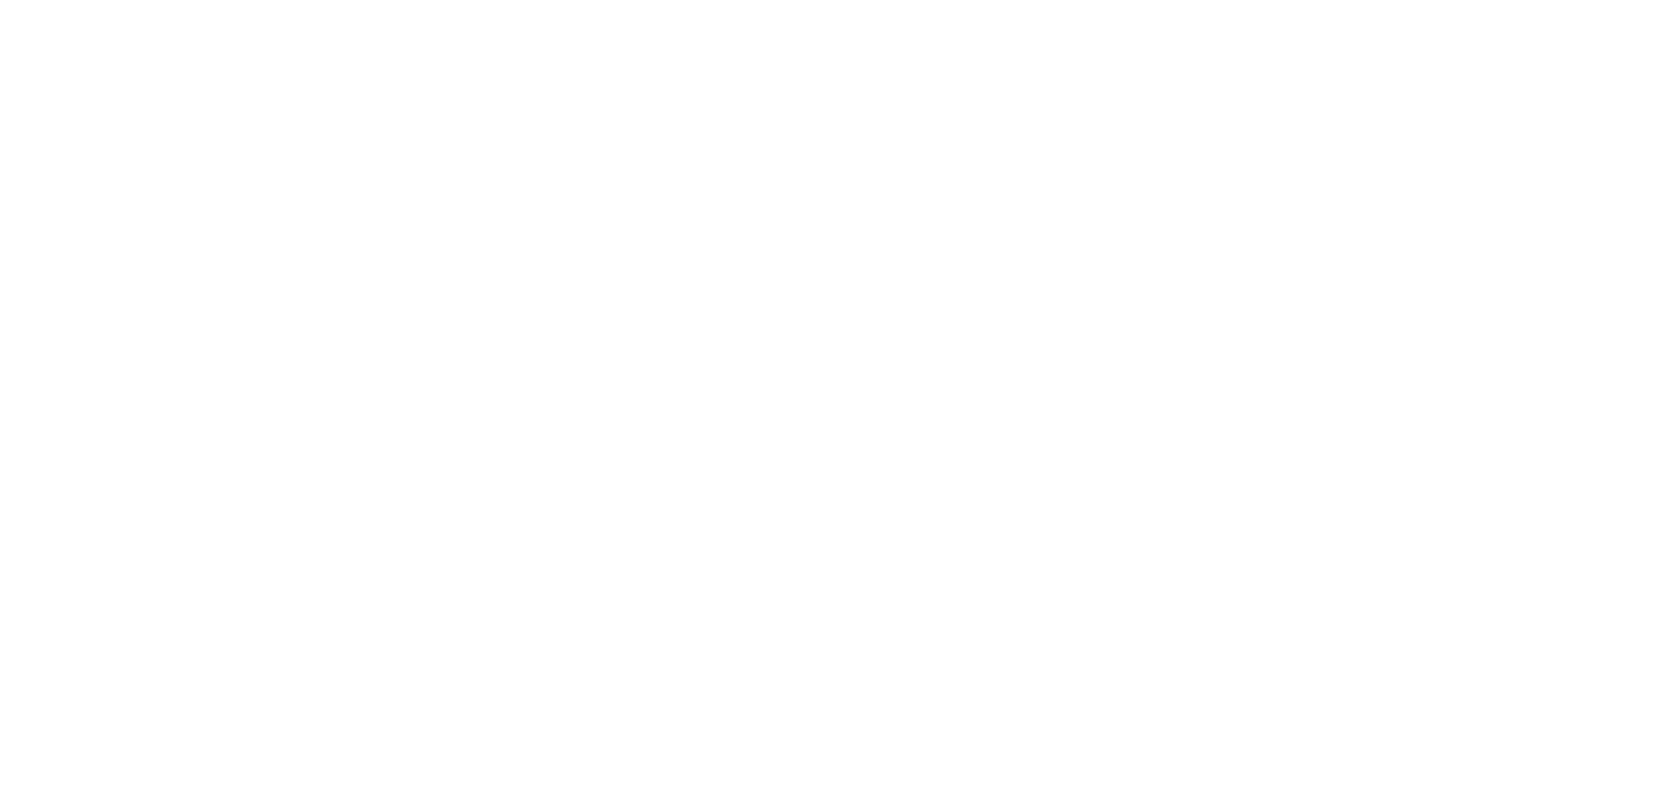 Nicole Godett: Empowerment Queen Jamie Bareño: Yogi Vibes Aruba - Kimberly Maduro: Self-Love Movement Aruba Derin Kuc   